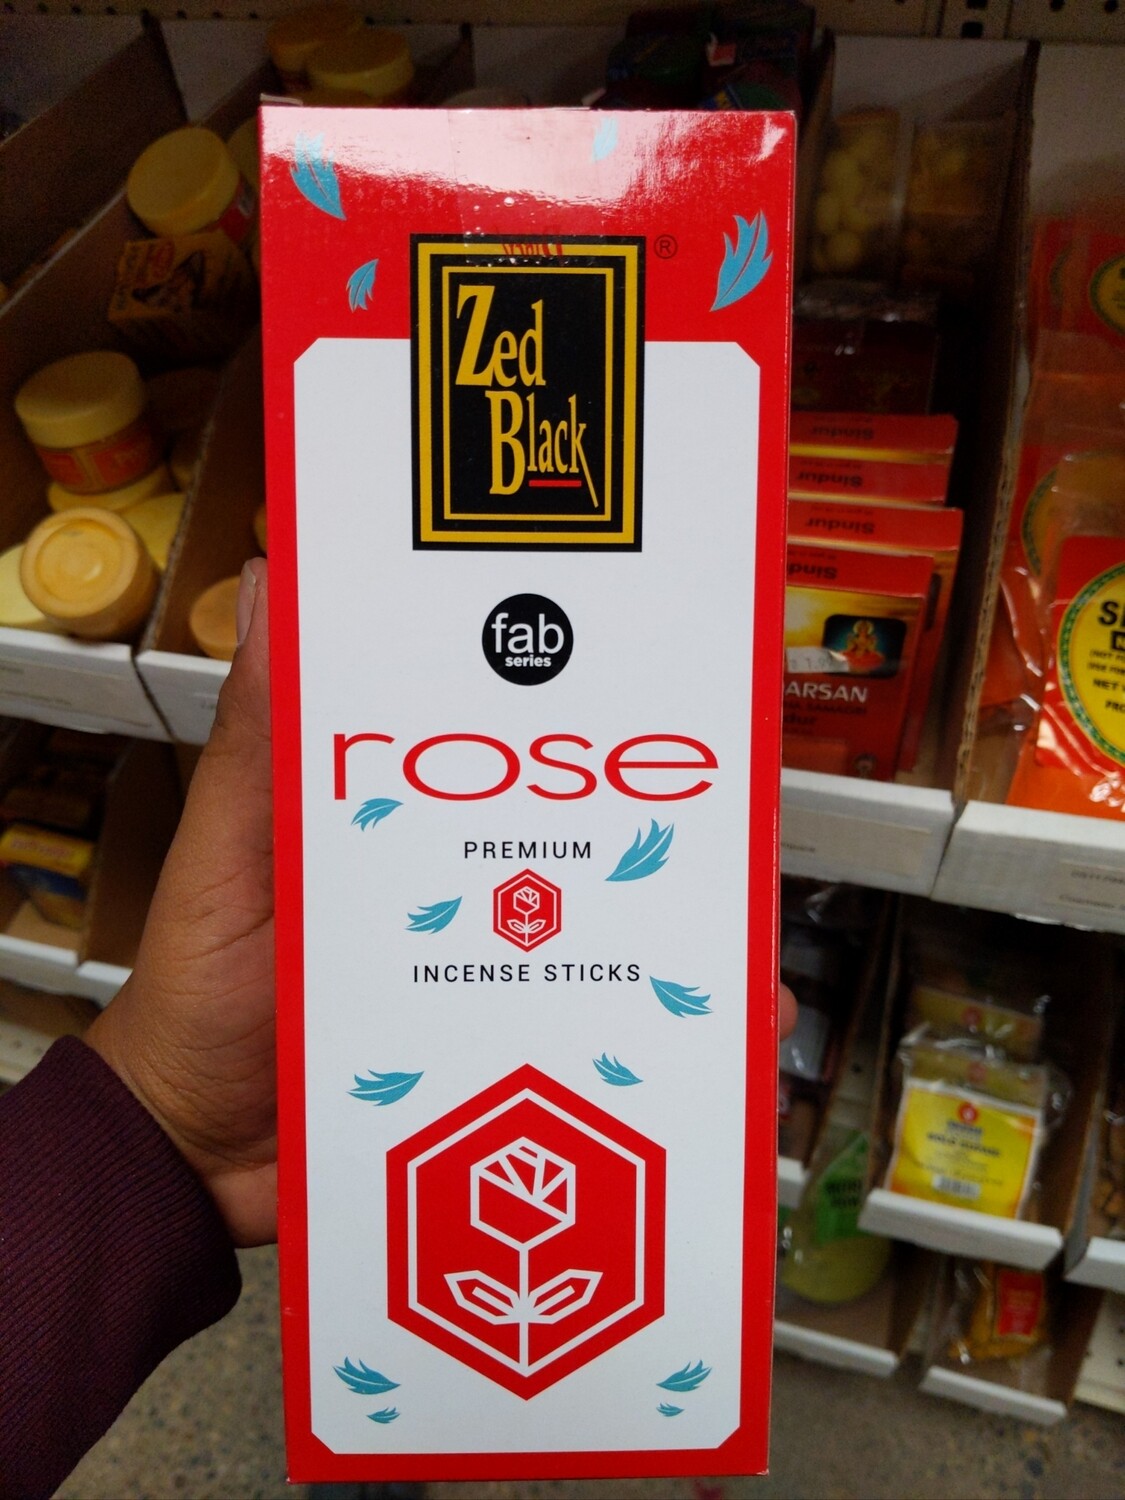 Zed Black Rose Premium Incense Sticks